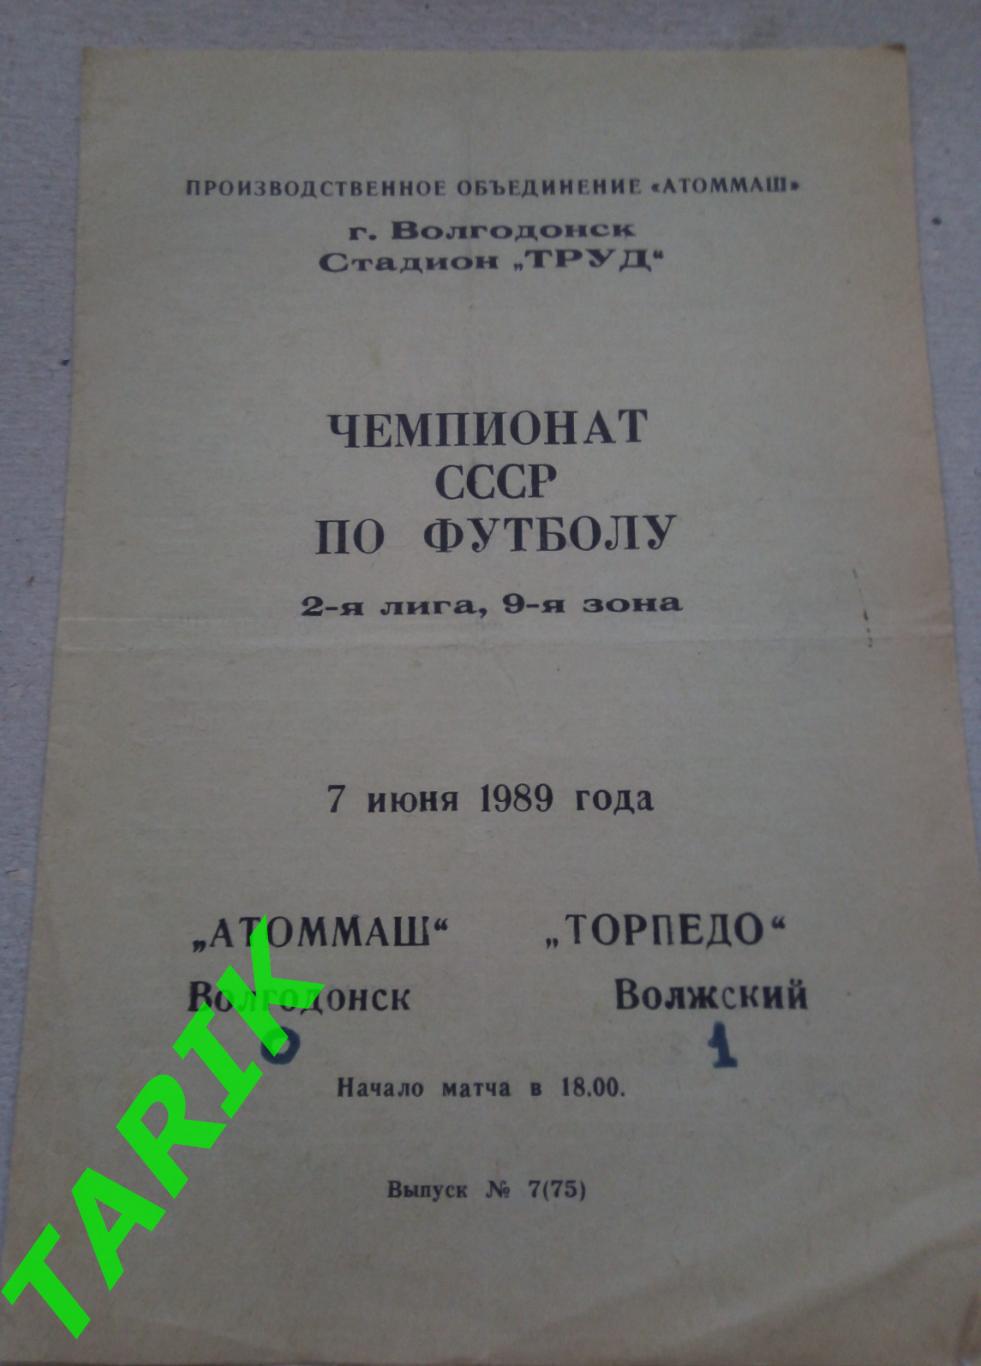 Атоммаш Волгодонск - Торпедо Волжский 7.06.1989